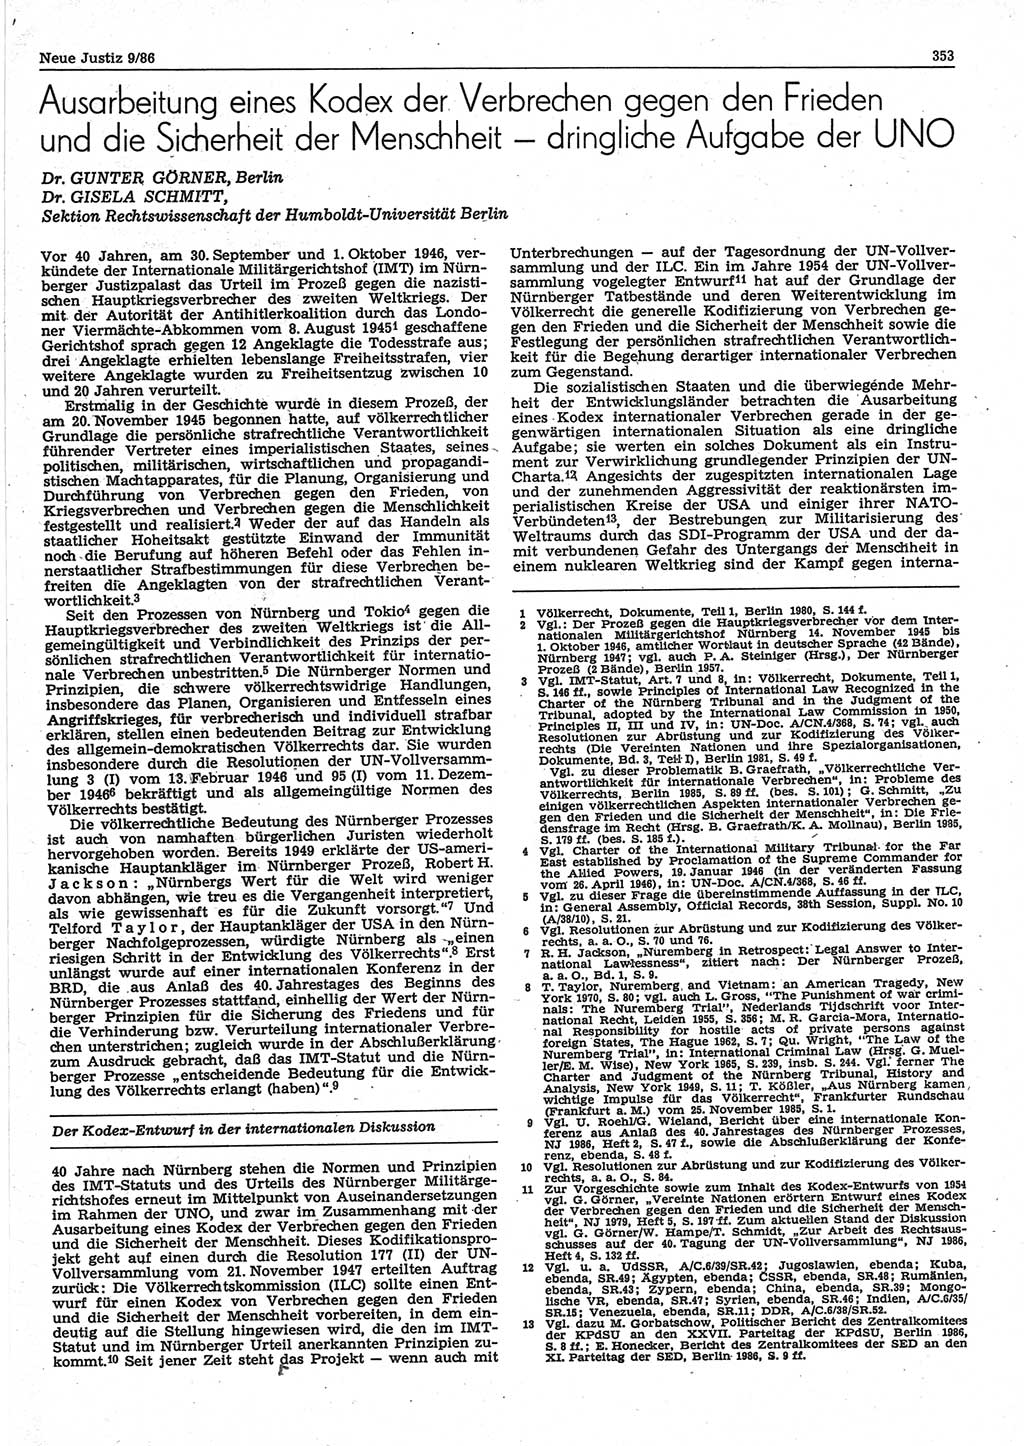 Neue Justiz (NJ), Zeitschrift für sozialistisches Recht und Gesetzlichkeit [Deutsche Demokratische Republik (DDR)], 40. Jahrgang 1986, Seite 353 (NJ DDR 1986, S. 353)